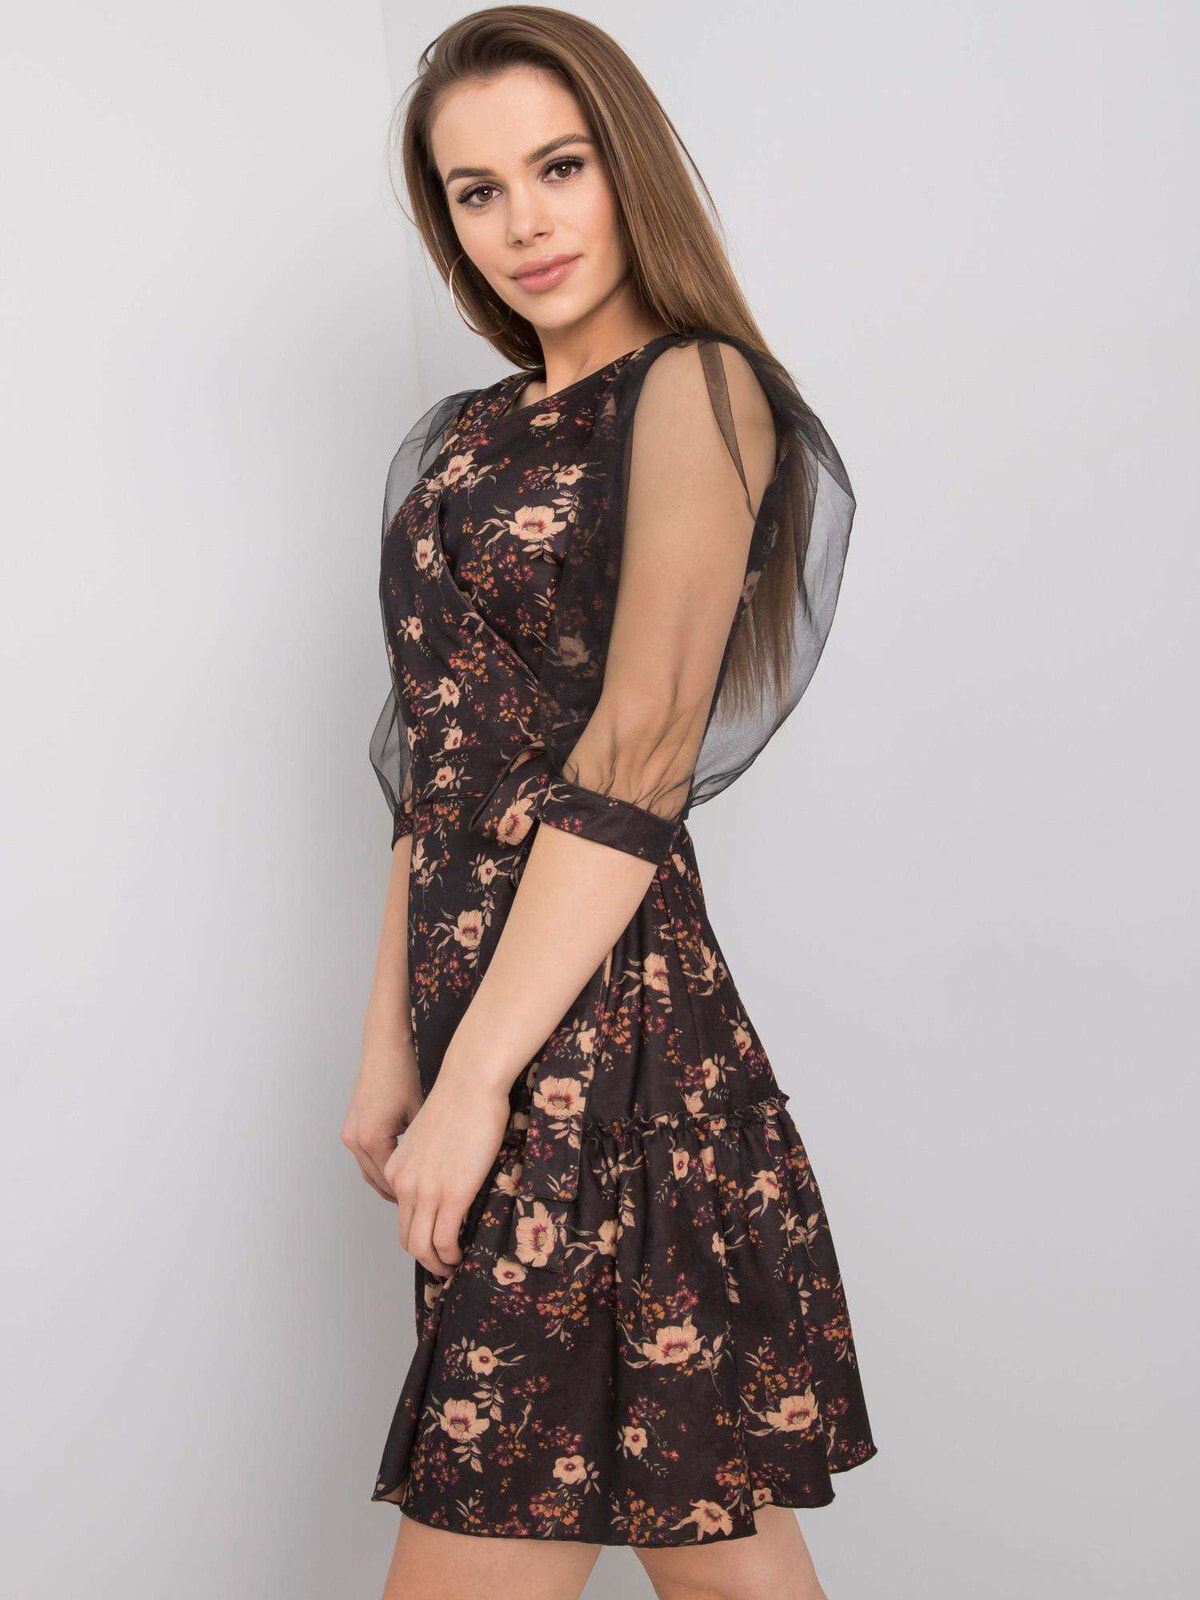 Женское платье с принтом цветы и рукавом фонариком сетка Factory Price